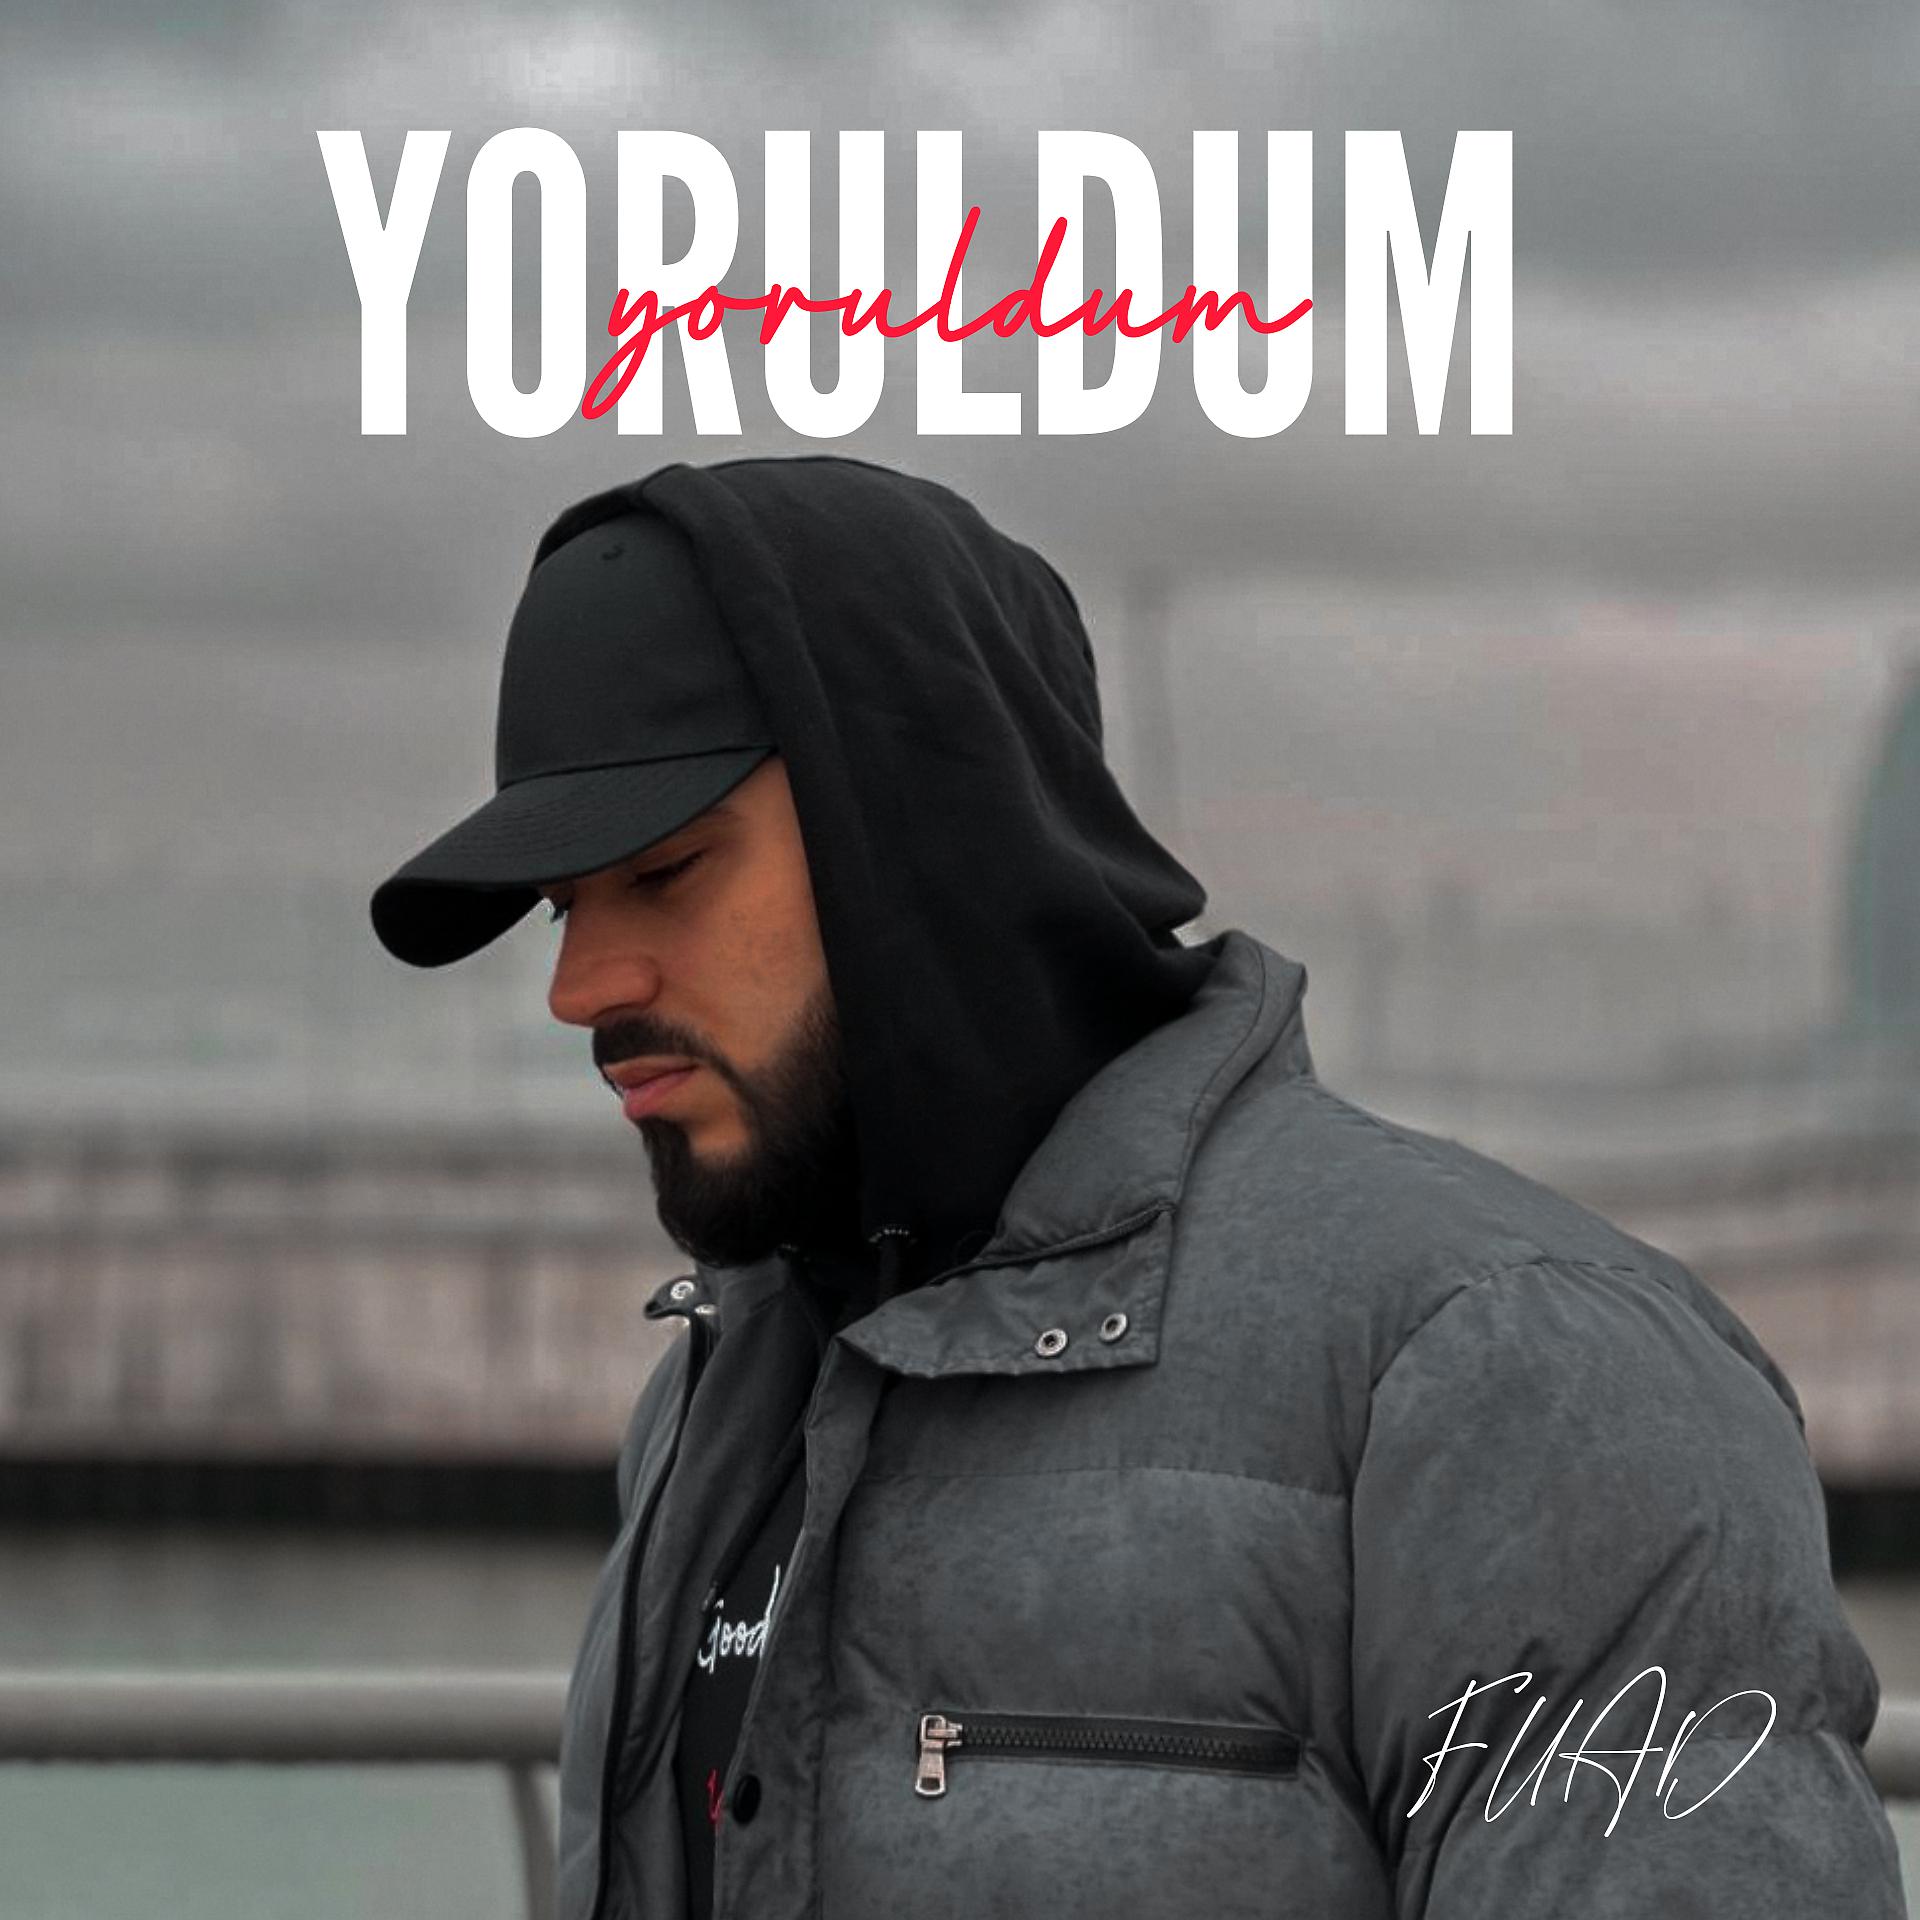 Постер альбома Yoruldum